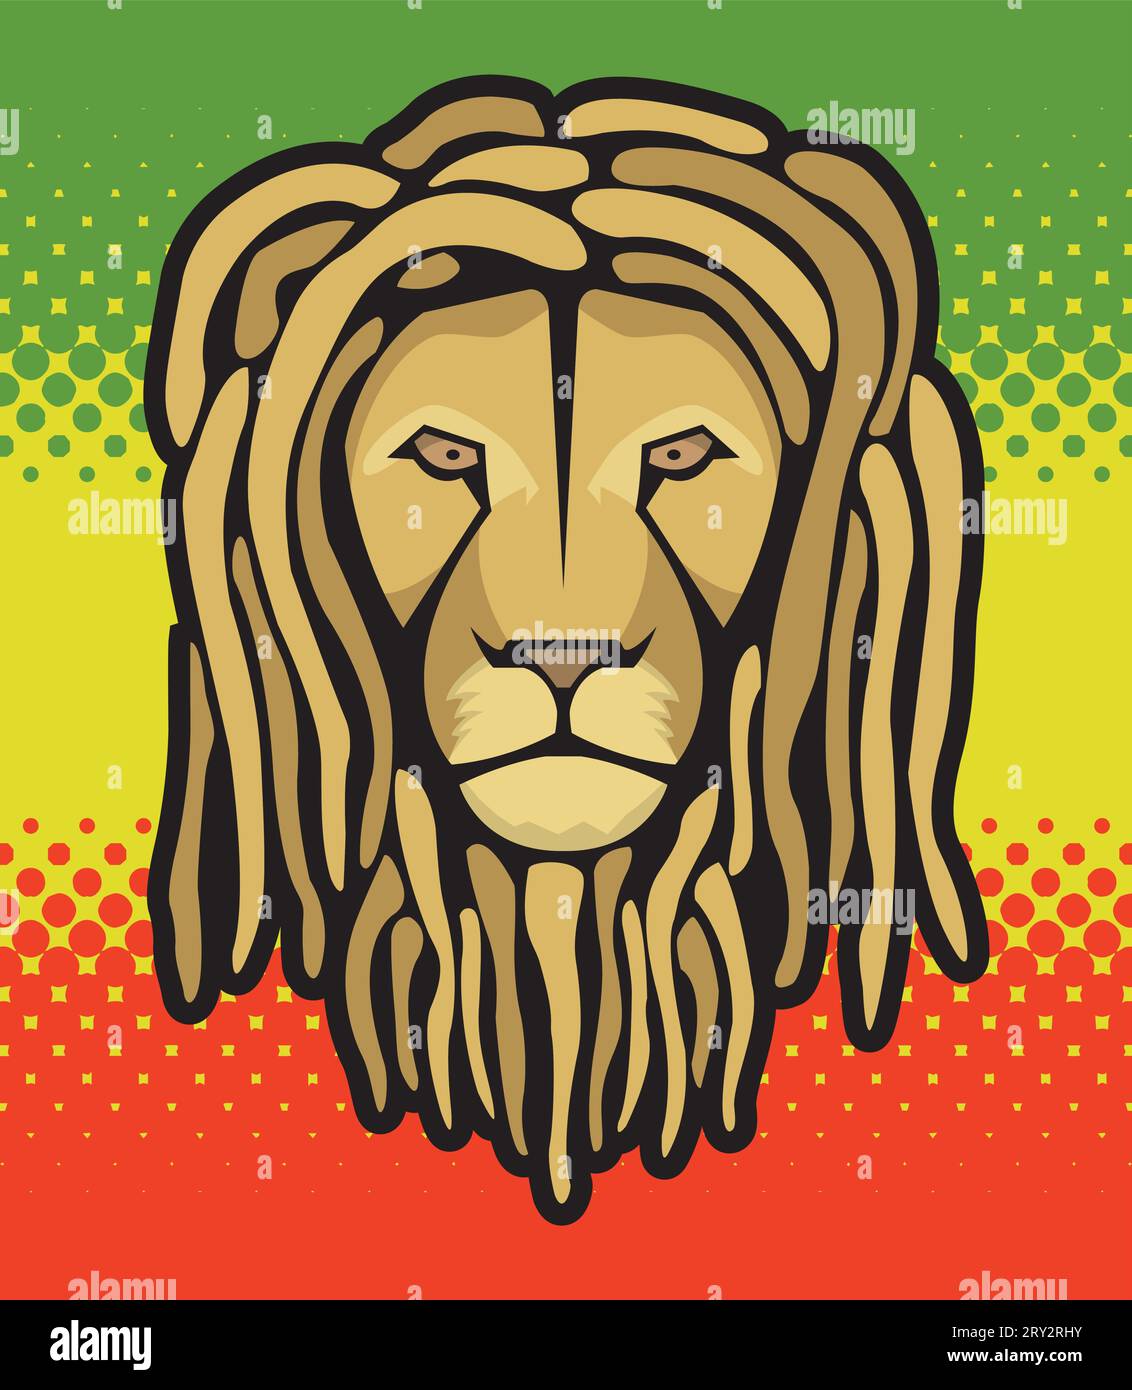 Löwenkopf mit Dreadlocks und Reggae-Halbtonfahne Hintergrund... für T-Shirts, Poster... Stock Vektor